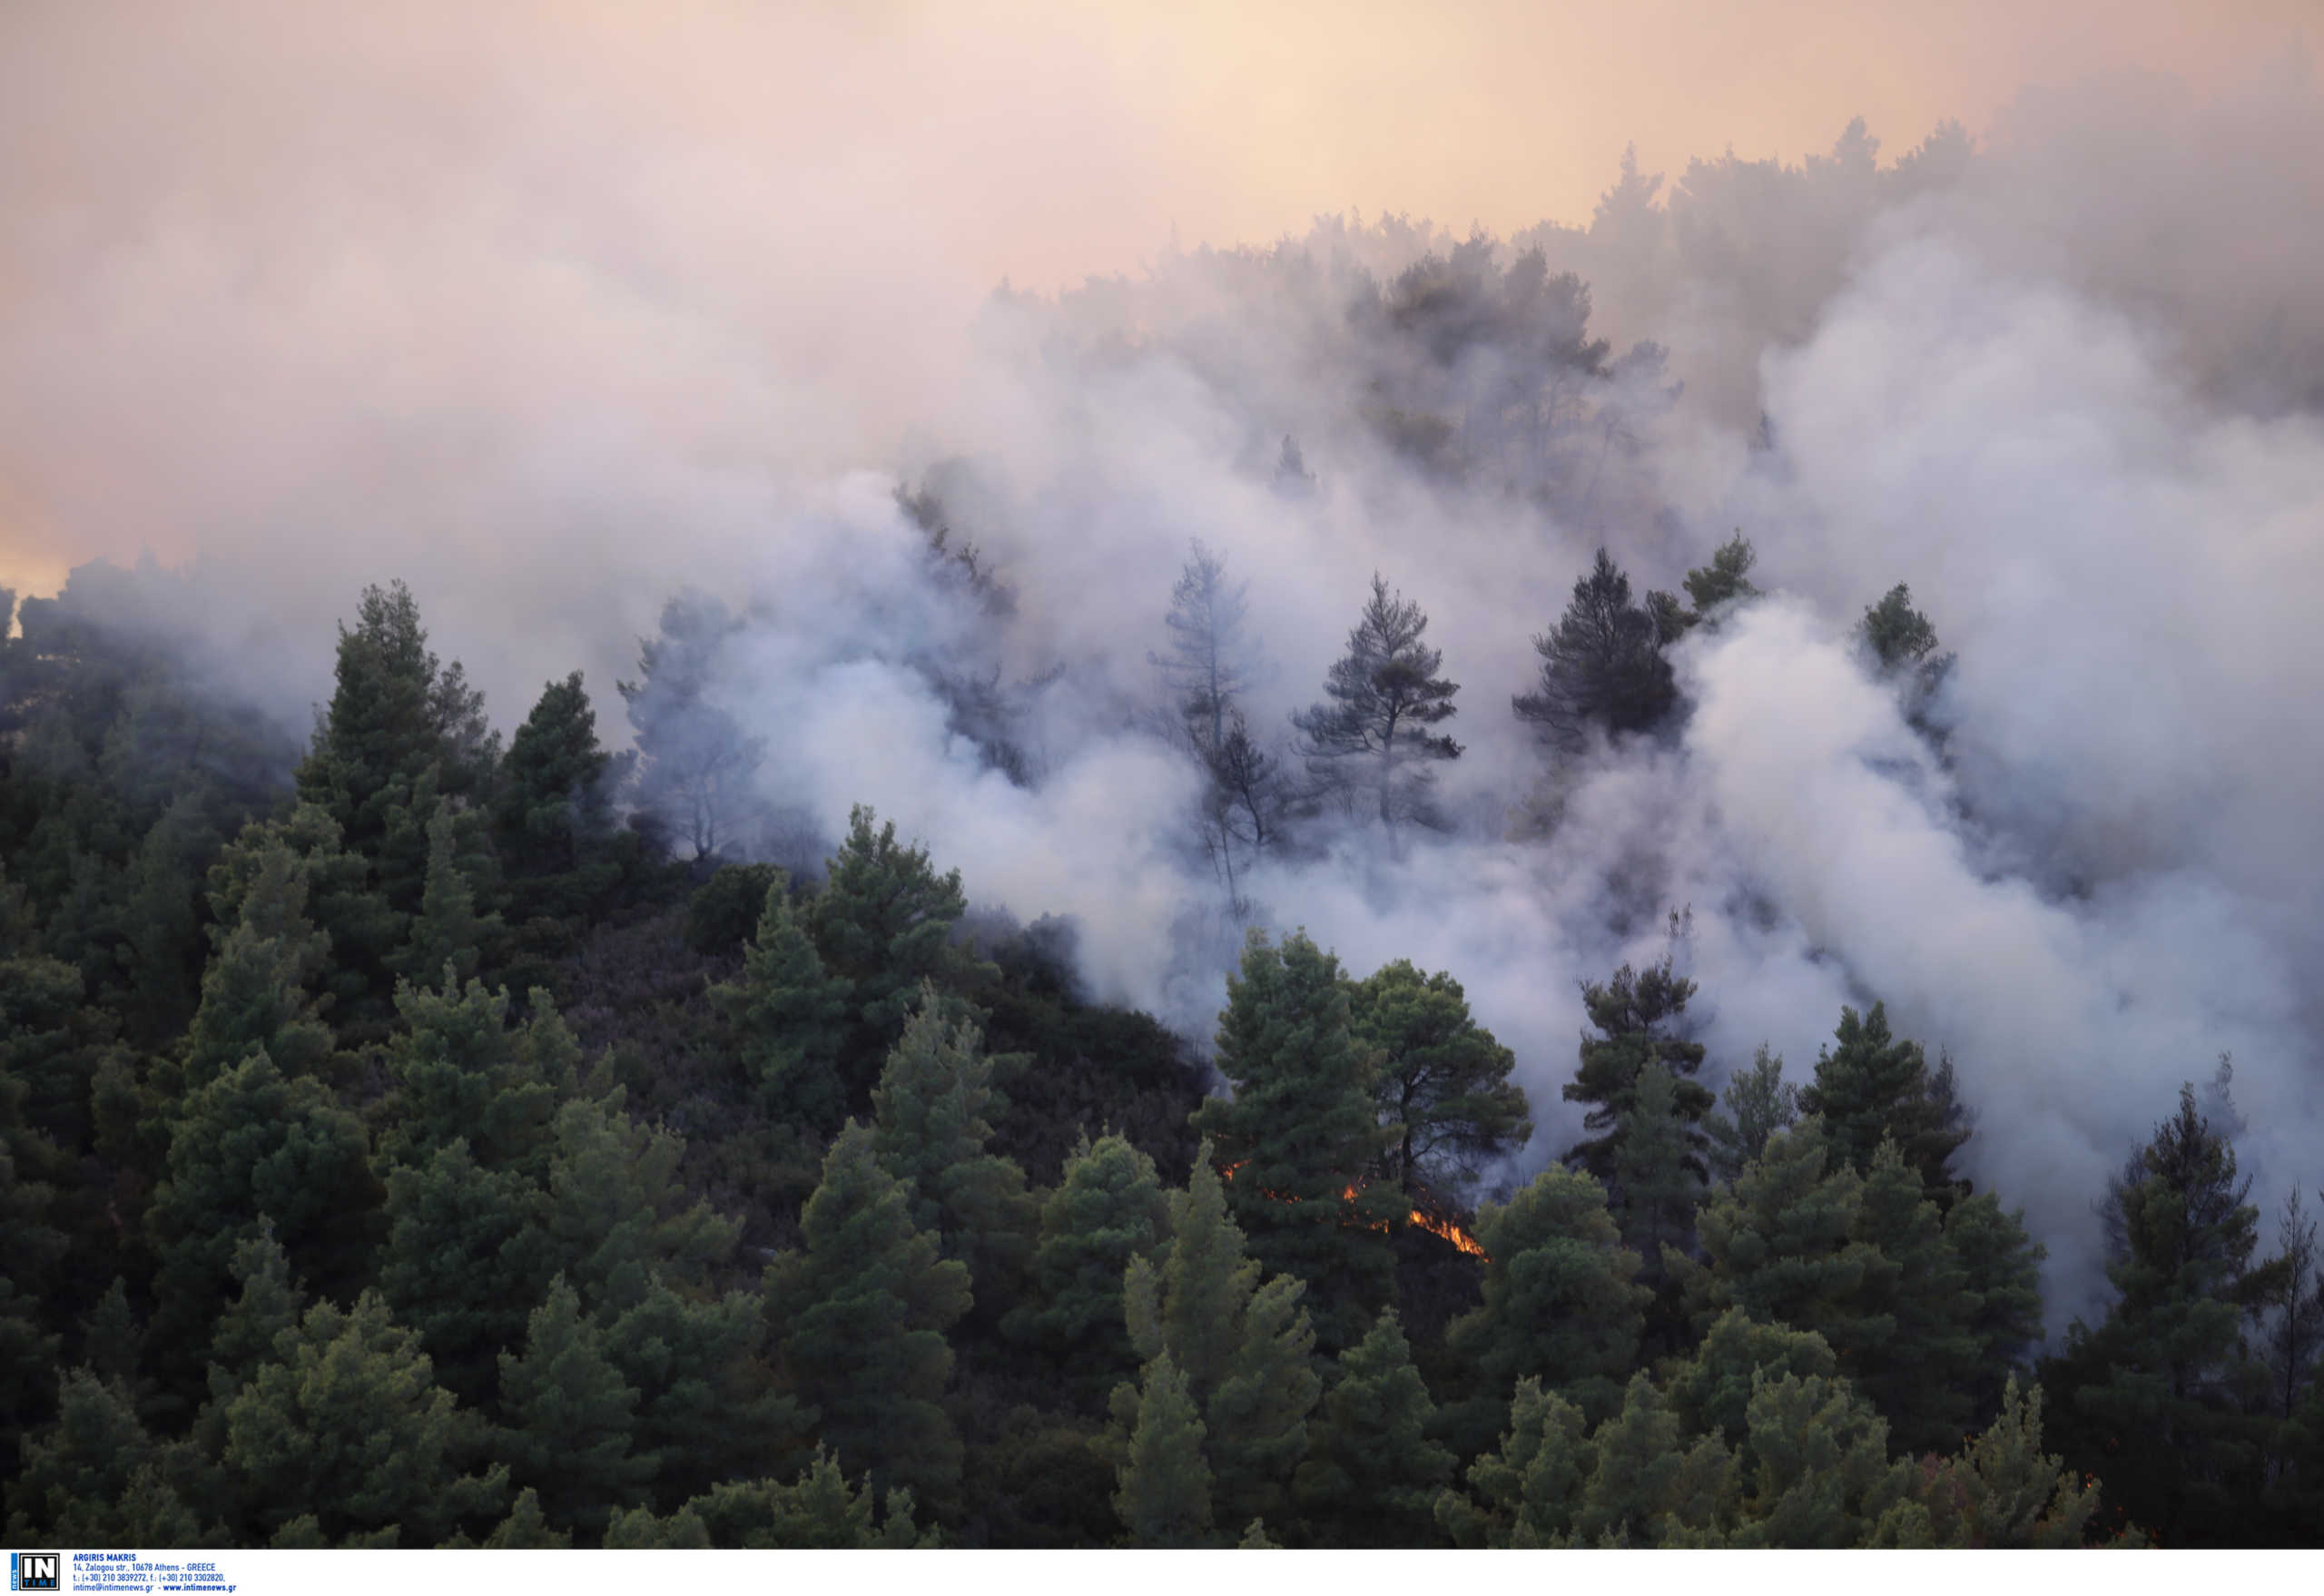 Ηλεία: Υπό μερικό έλεγχο η φωτιά στην περιοχή Κολοκυθάς! Οι πυροσβέστες συνεχίζουν να επιχειρούν